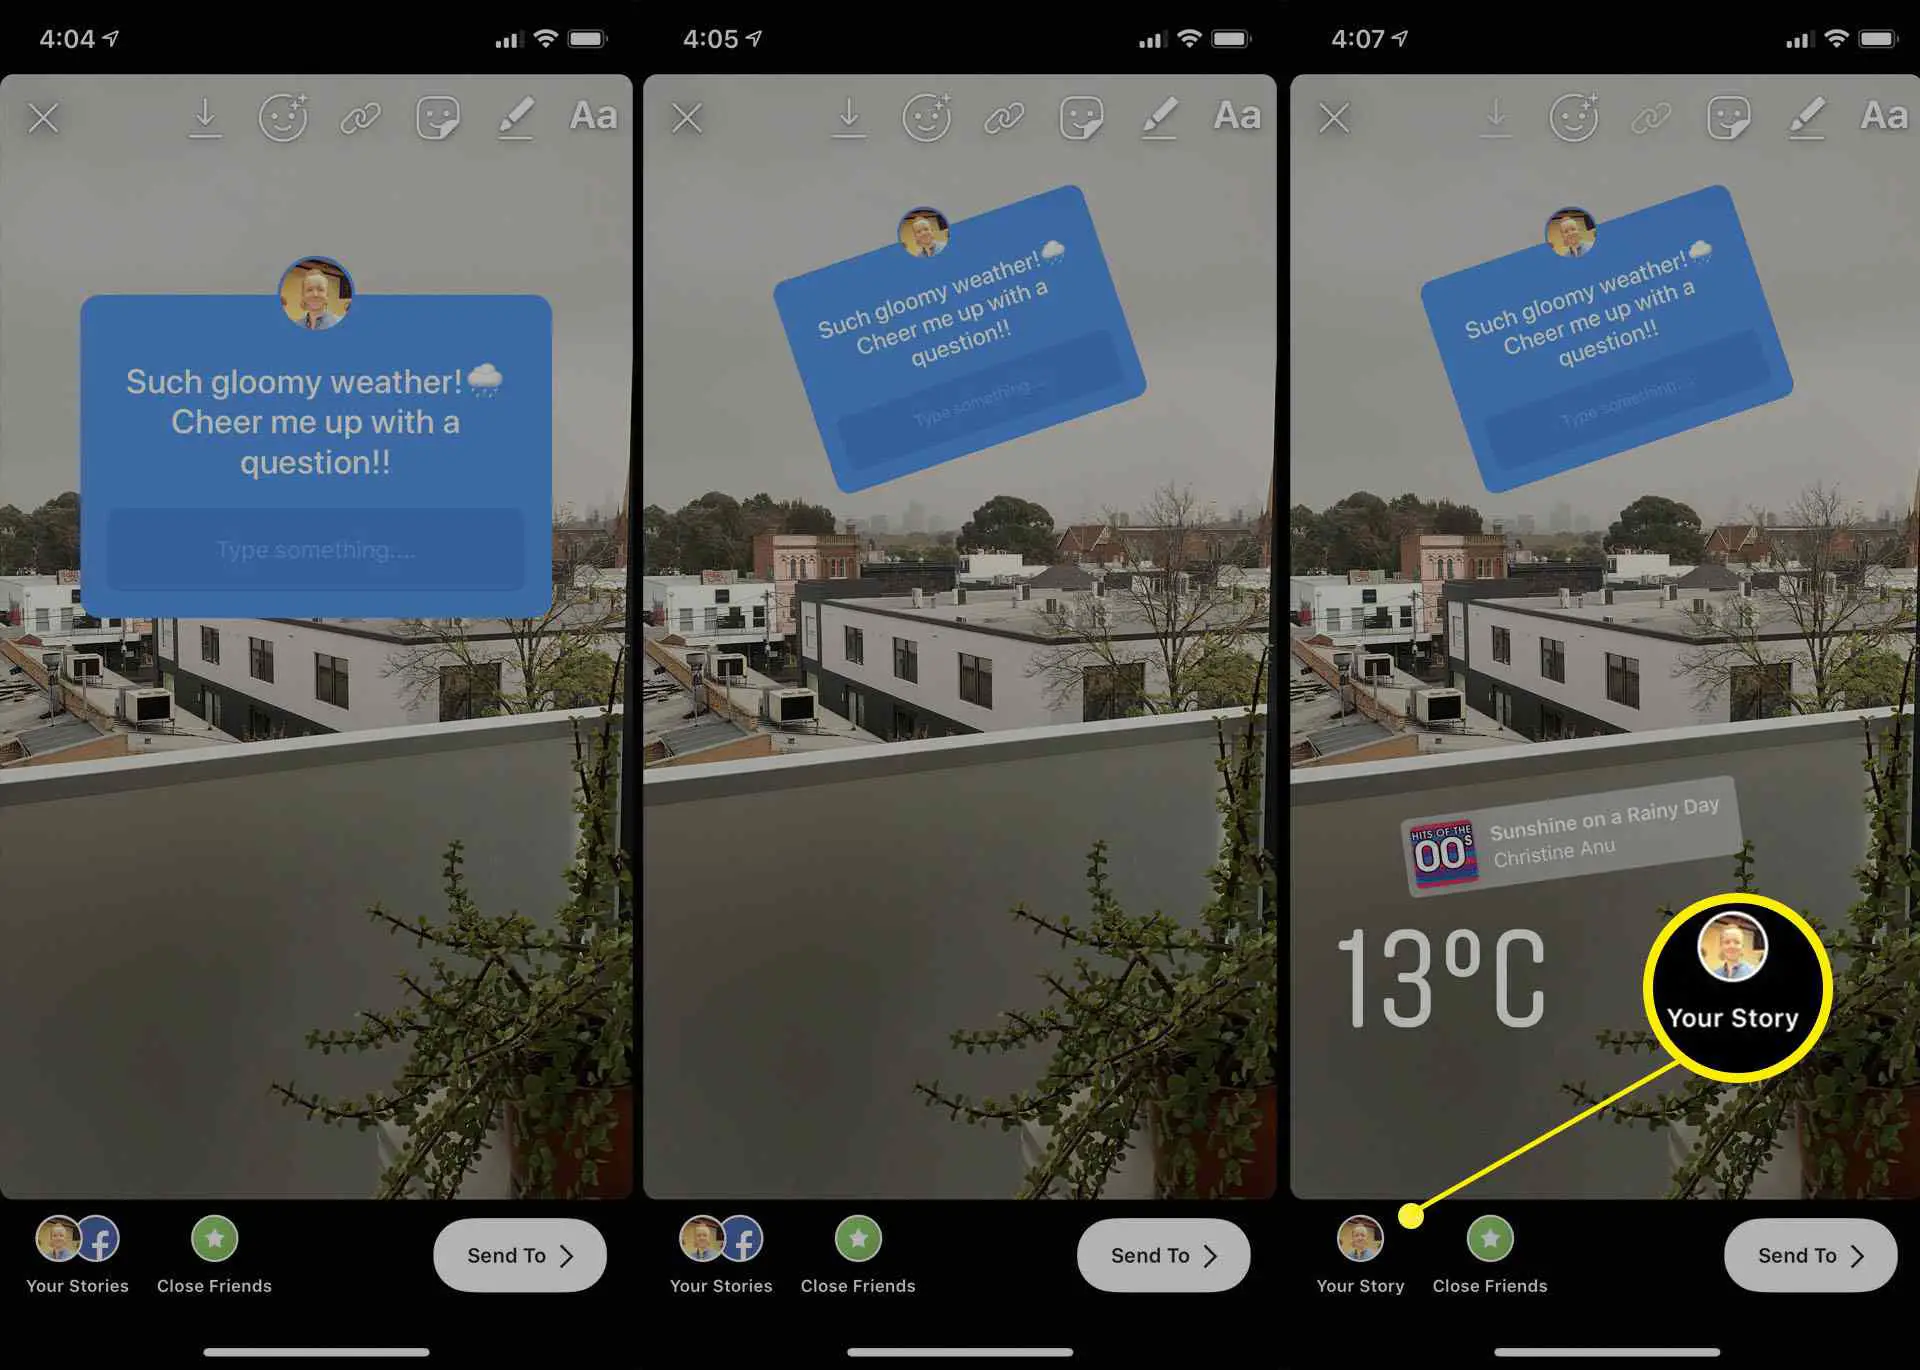 Usando o adesivo de perguntas Instagram Stories no aplicativo iOS Instagram no iPhone.